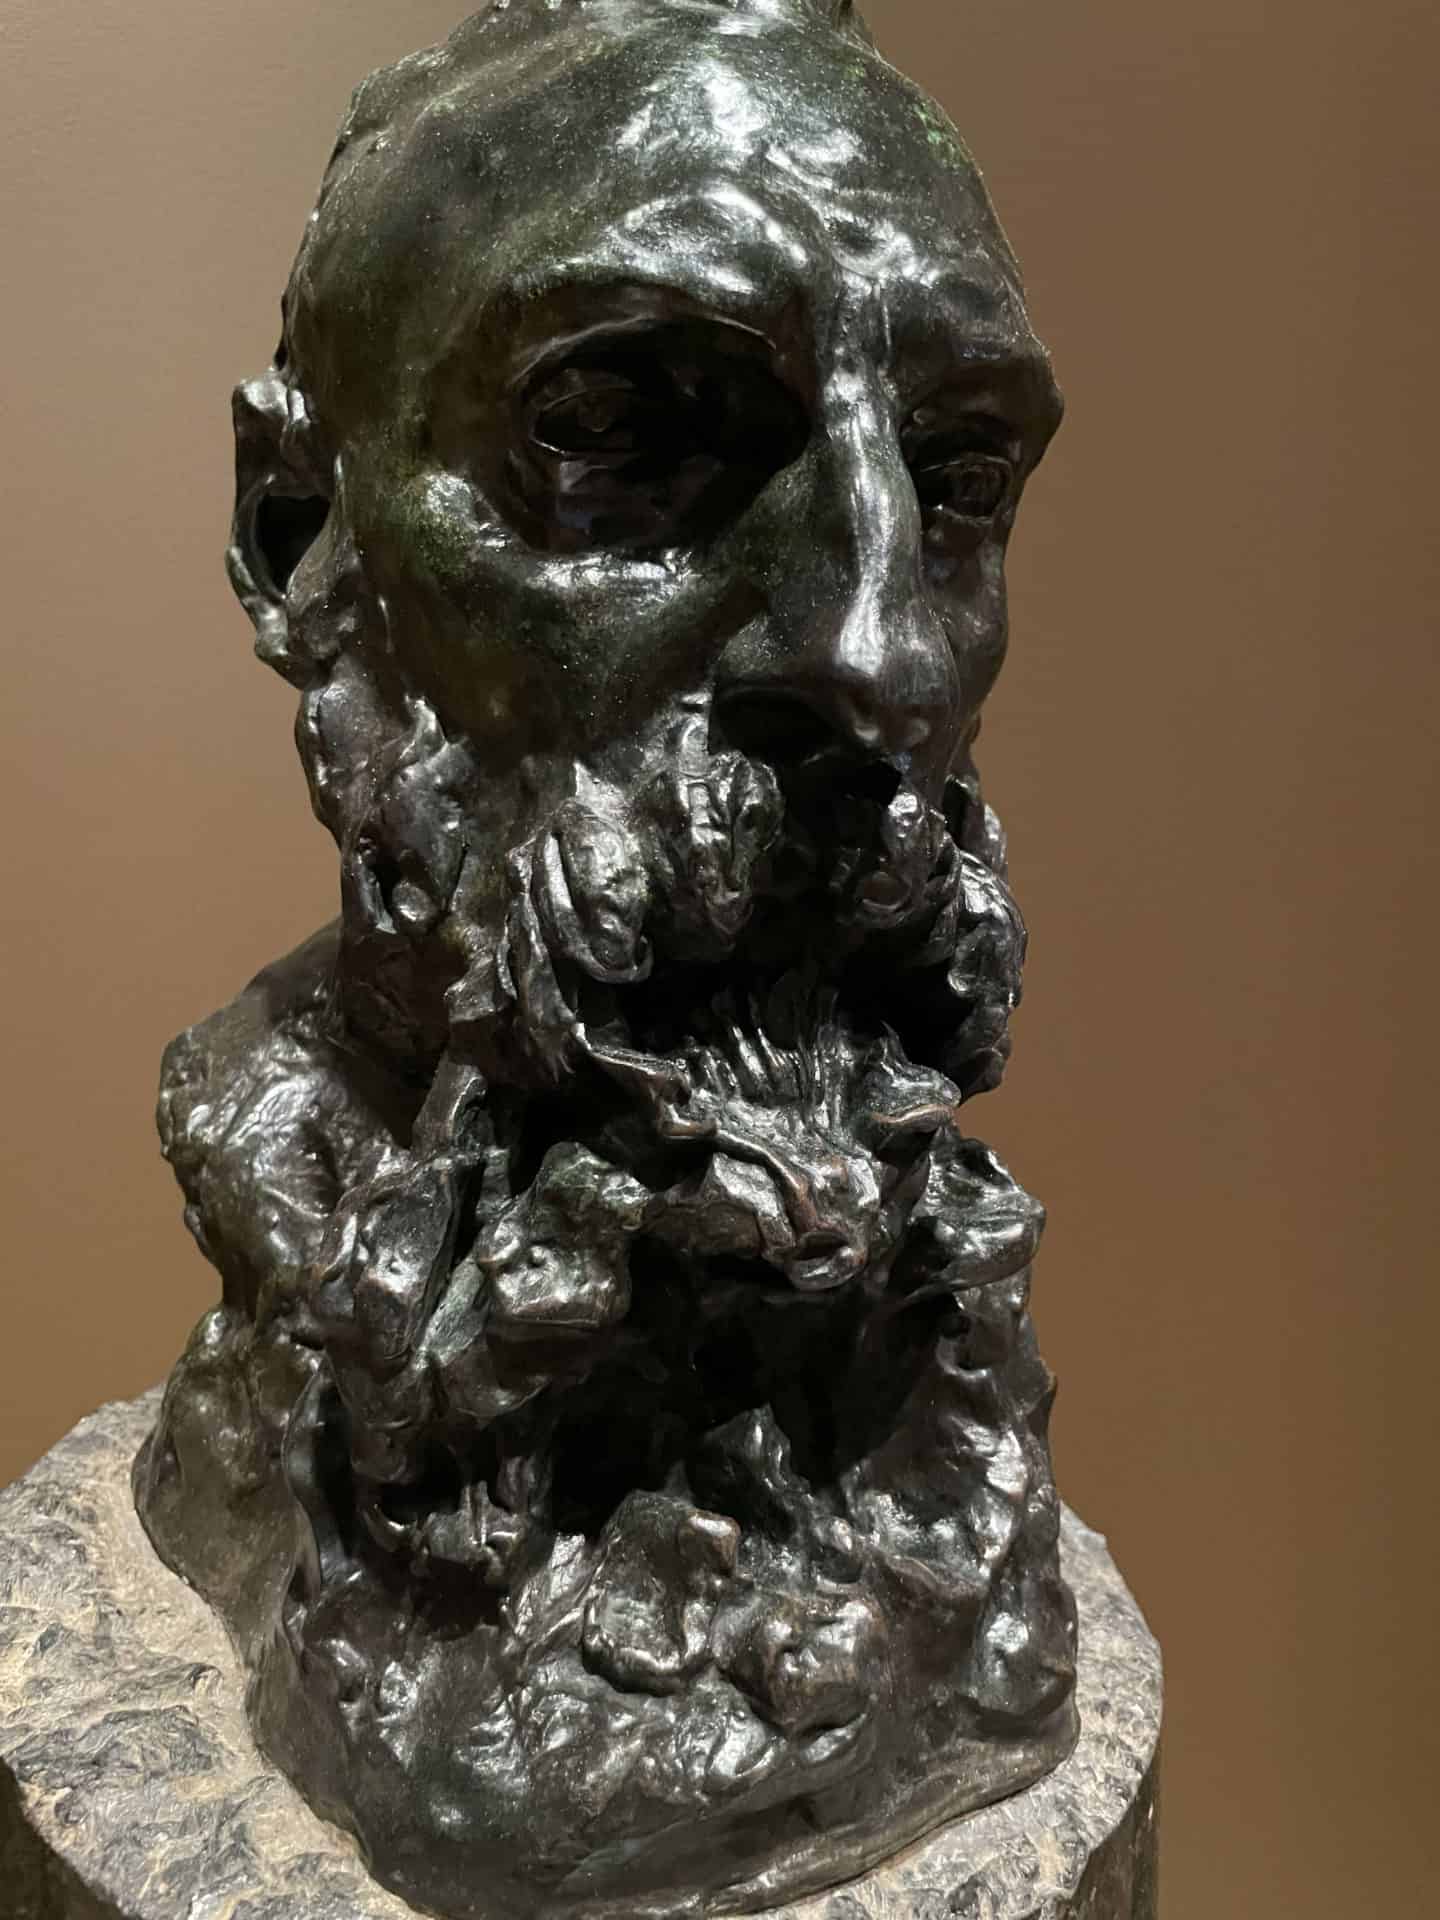 Sculptor Camille Claudel reveals Rodin in bronze at the Clark Art Institute.